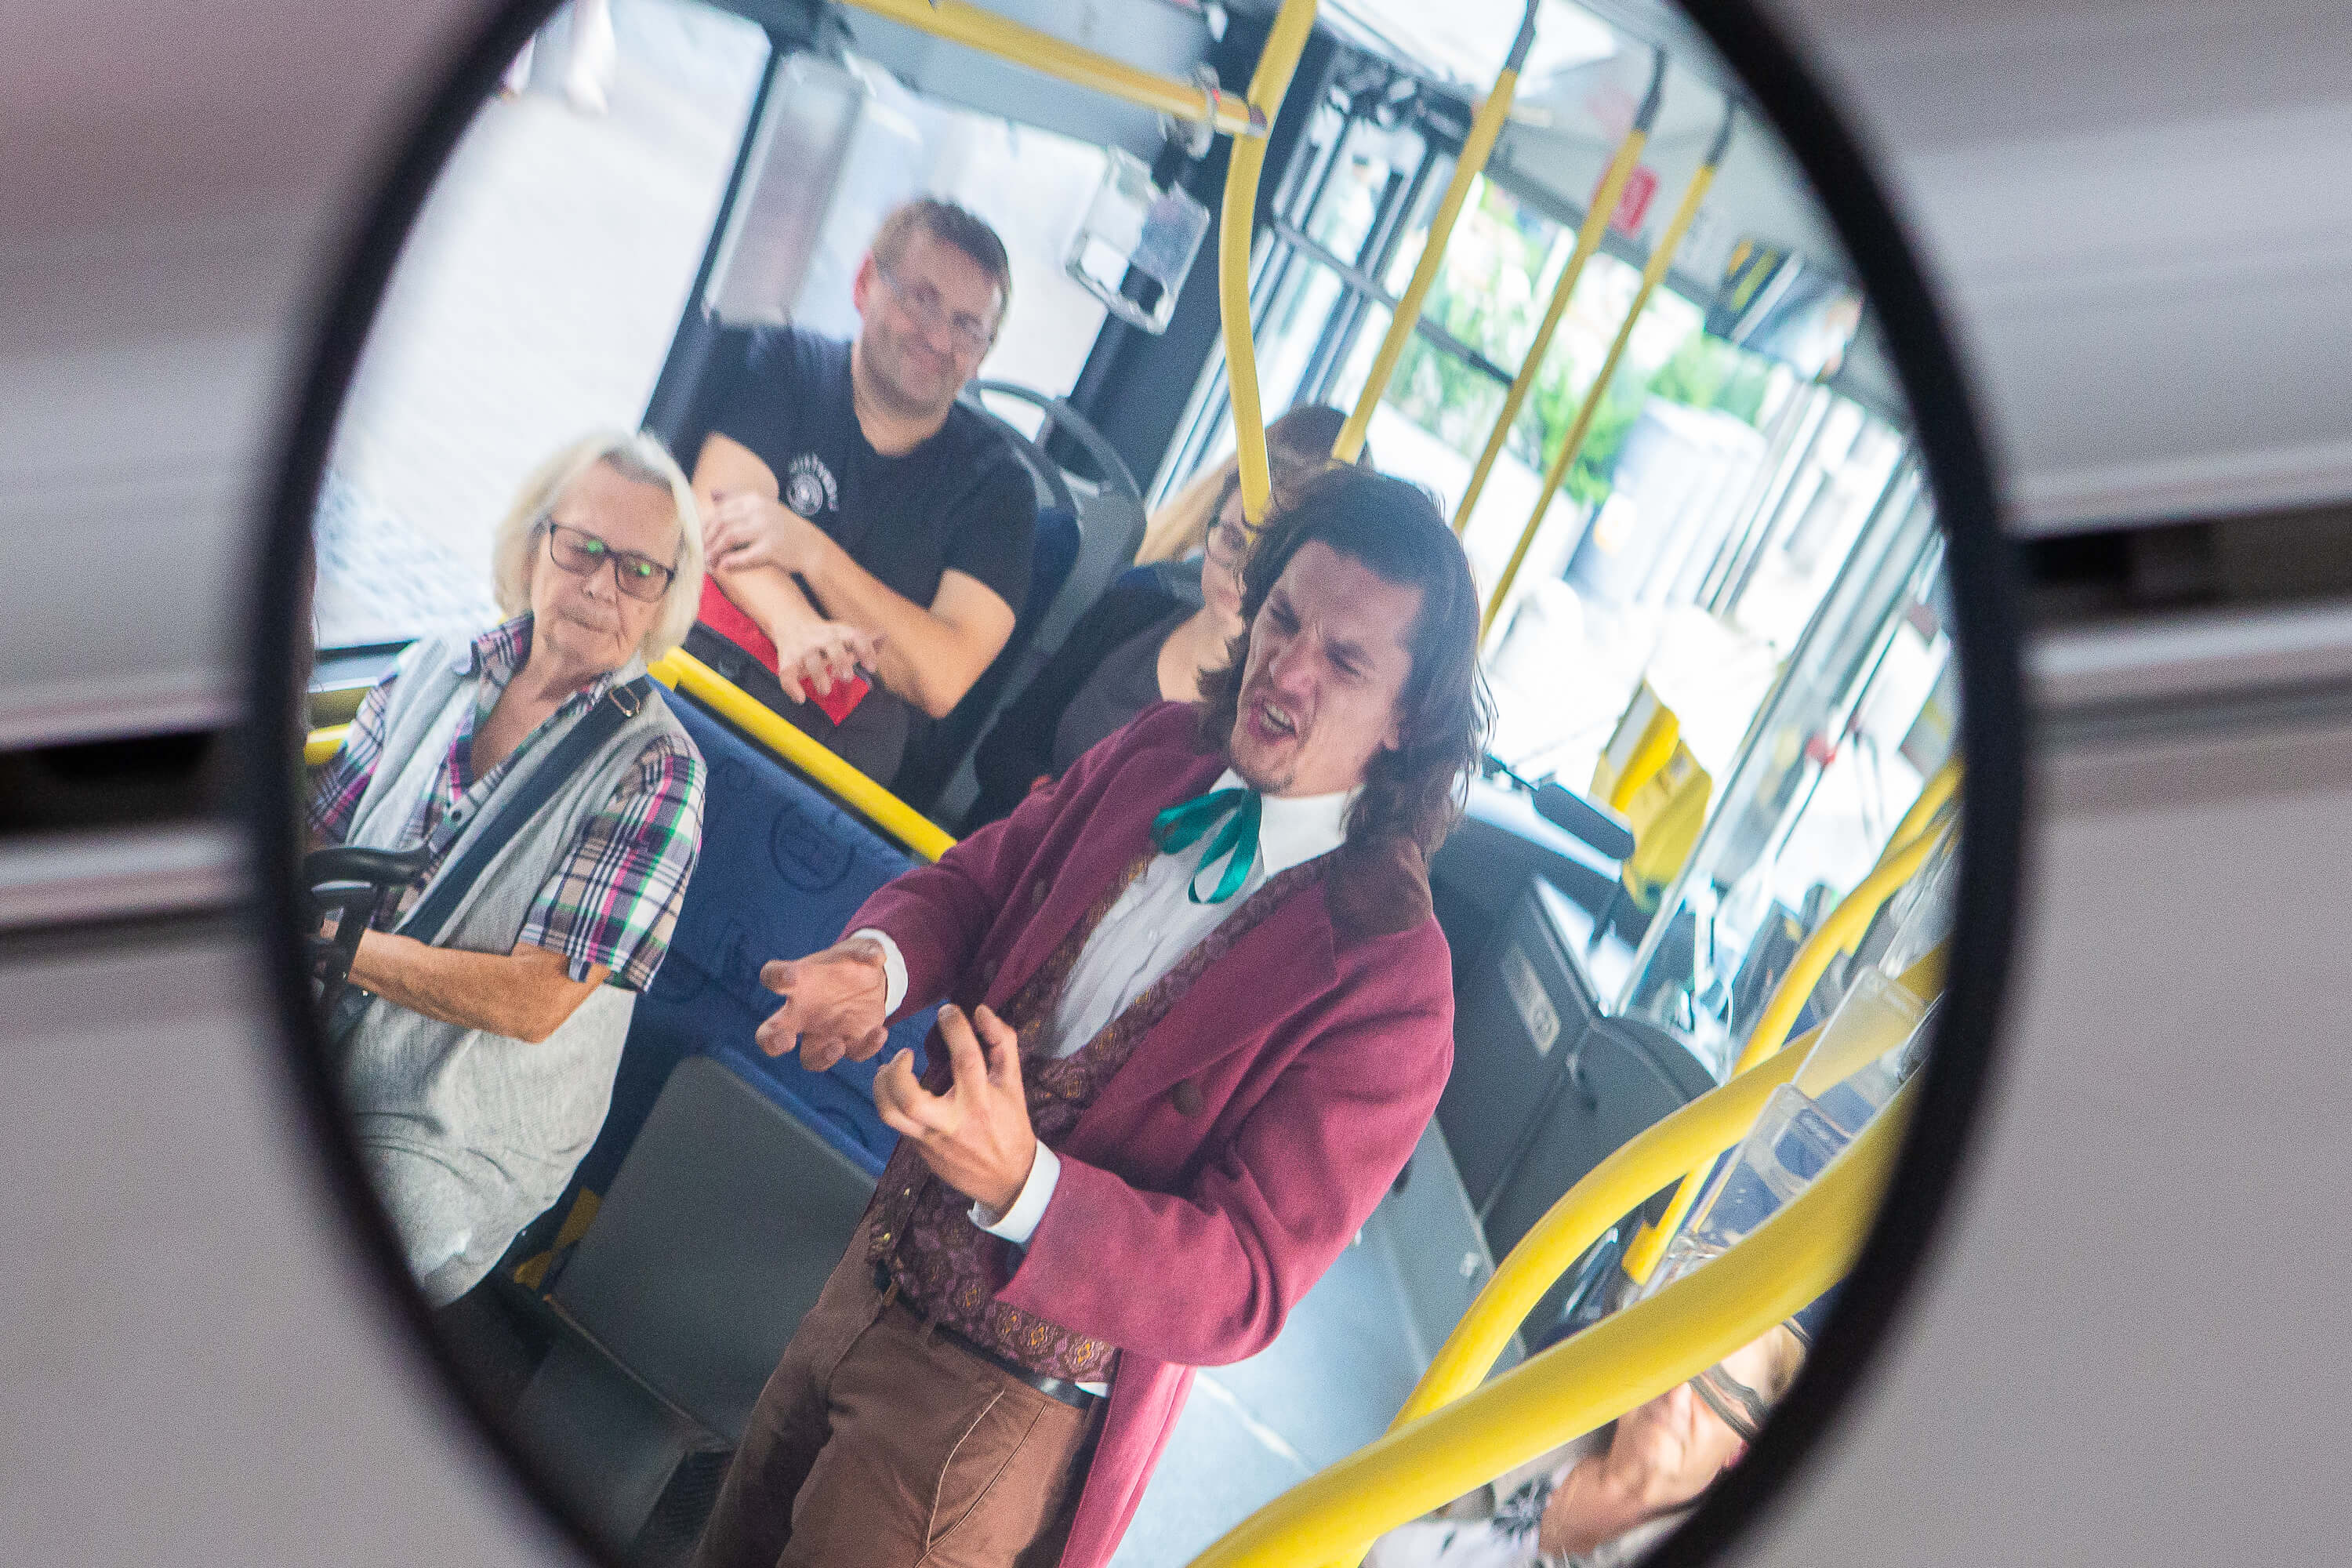 Zdjęcie odbicia w lustrze w środku autobusu. Widać na nim kilku pasażerów oraz stojącego mężczyznę ubranego w różowy frak. Intensywnie gestykuluje i mówi coś pełen pasji.